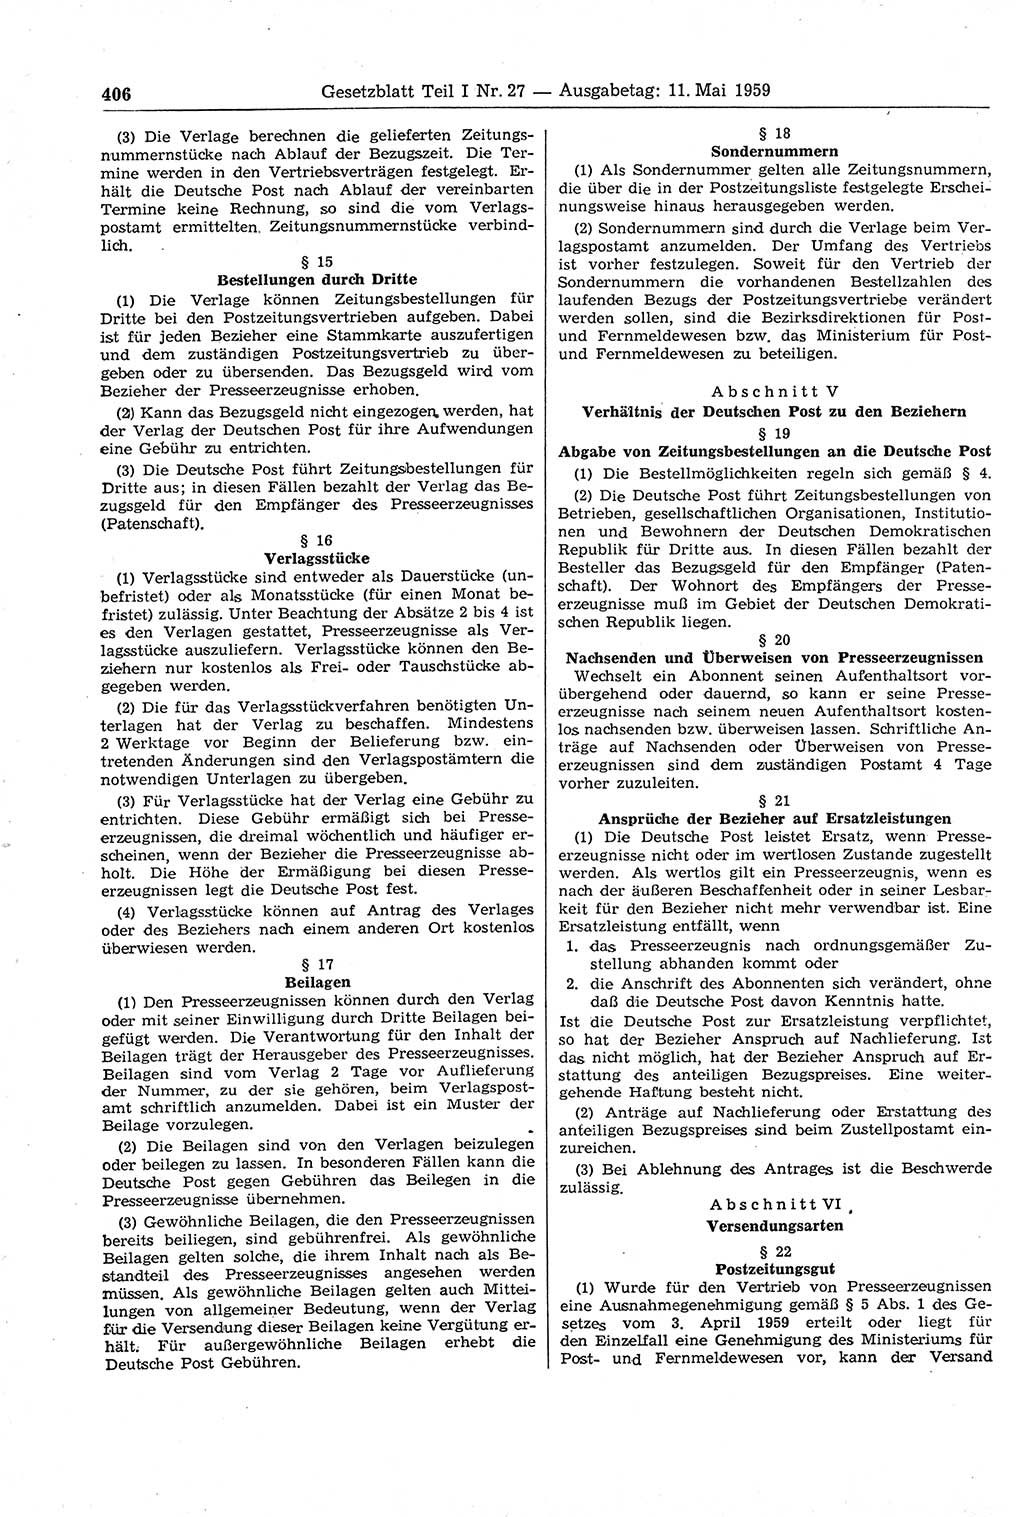 Gesetzblatt (GBl.) der Deutschen Demokratischen Republik (DDR) Teil Ⅰ 1959, Seite 406 (GBl. DDR Ⅰ 1959, S. 406)